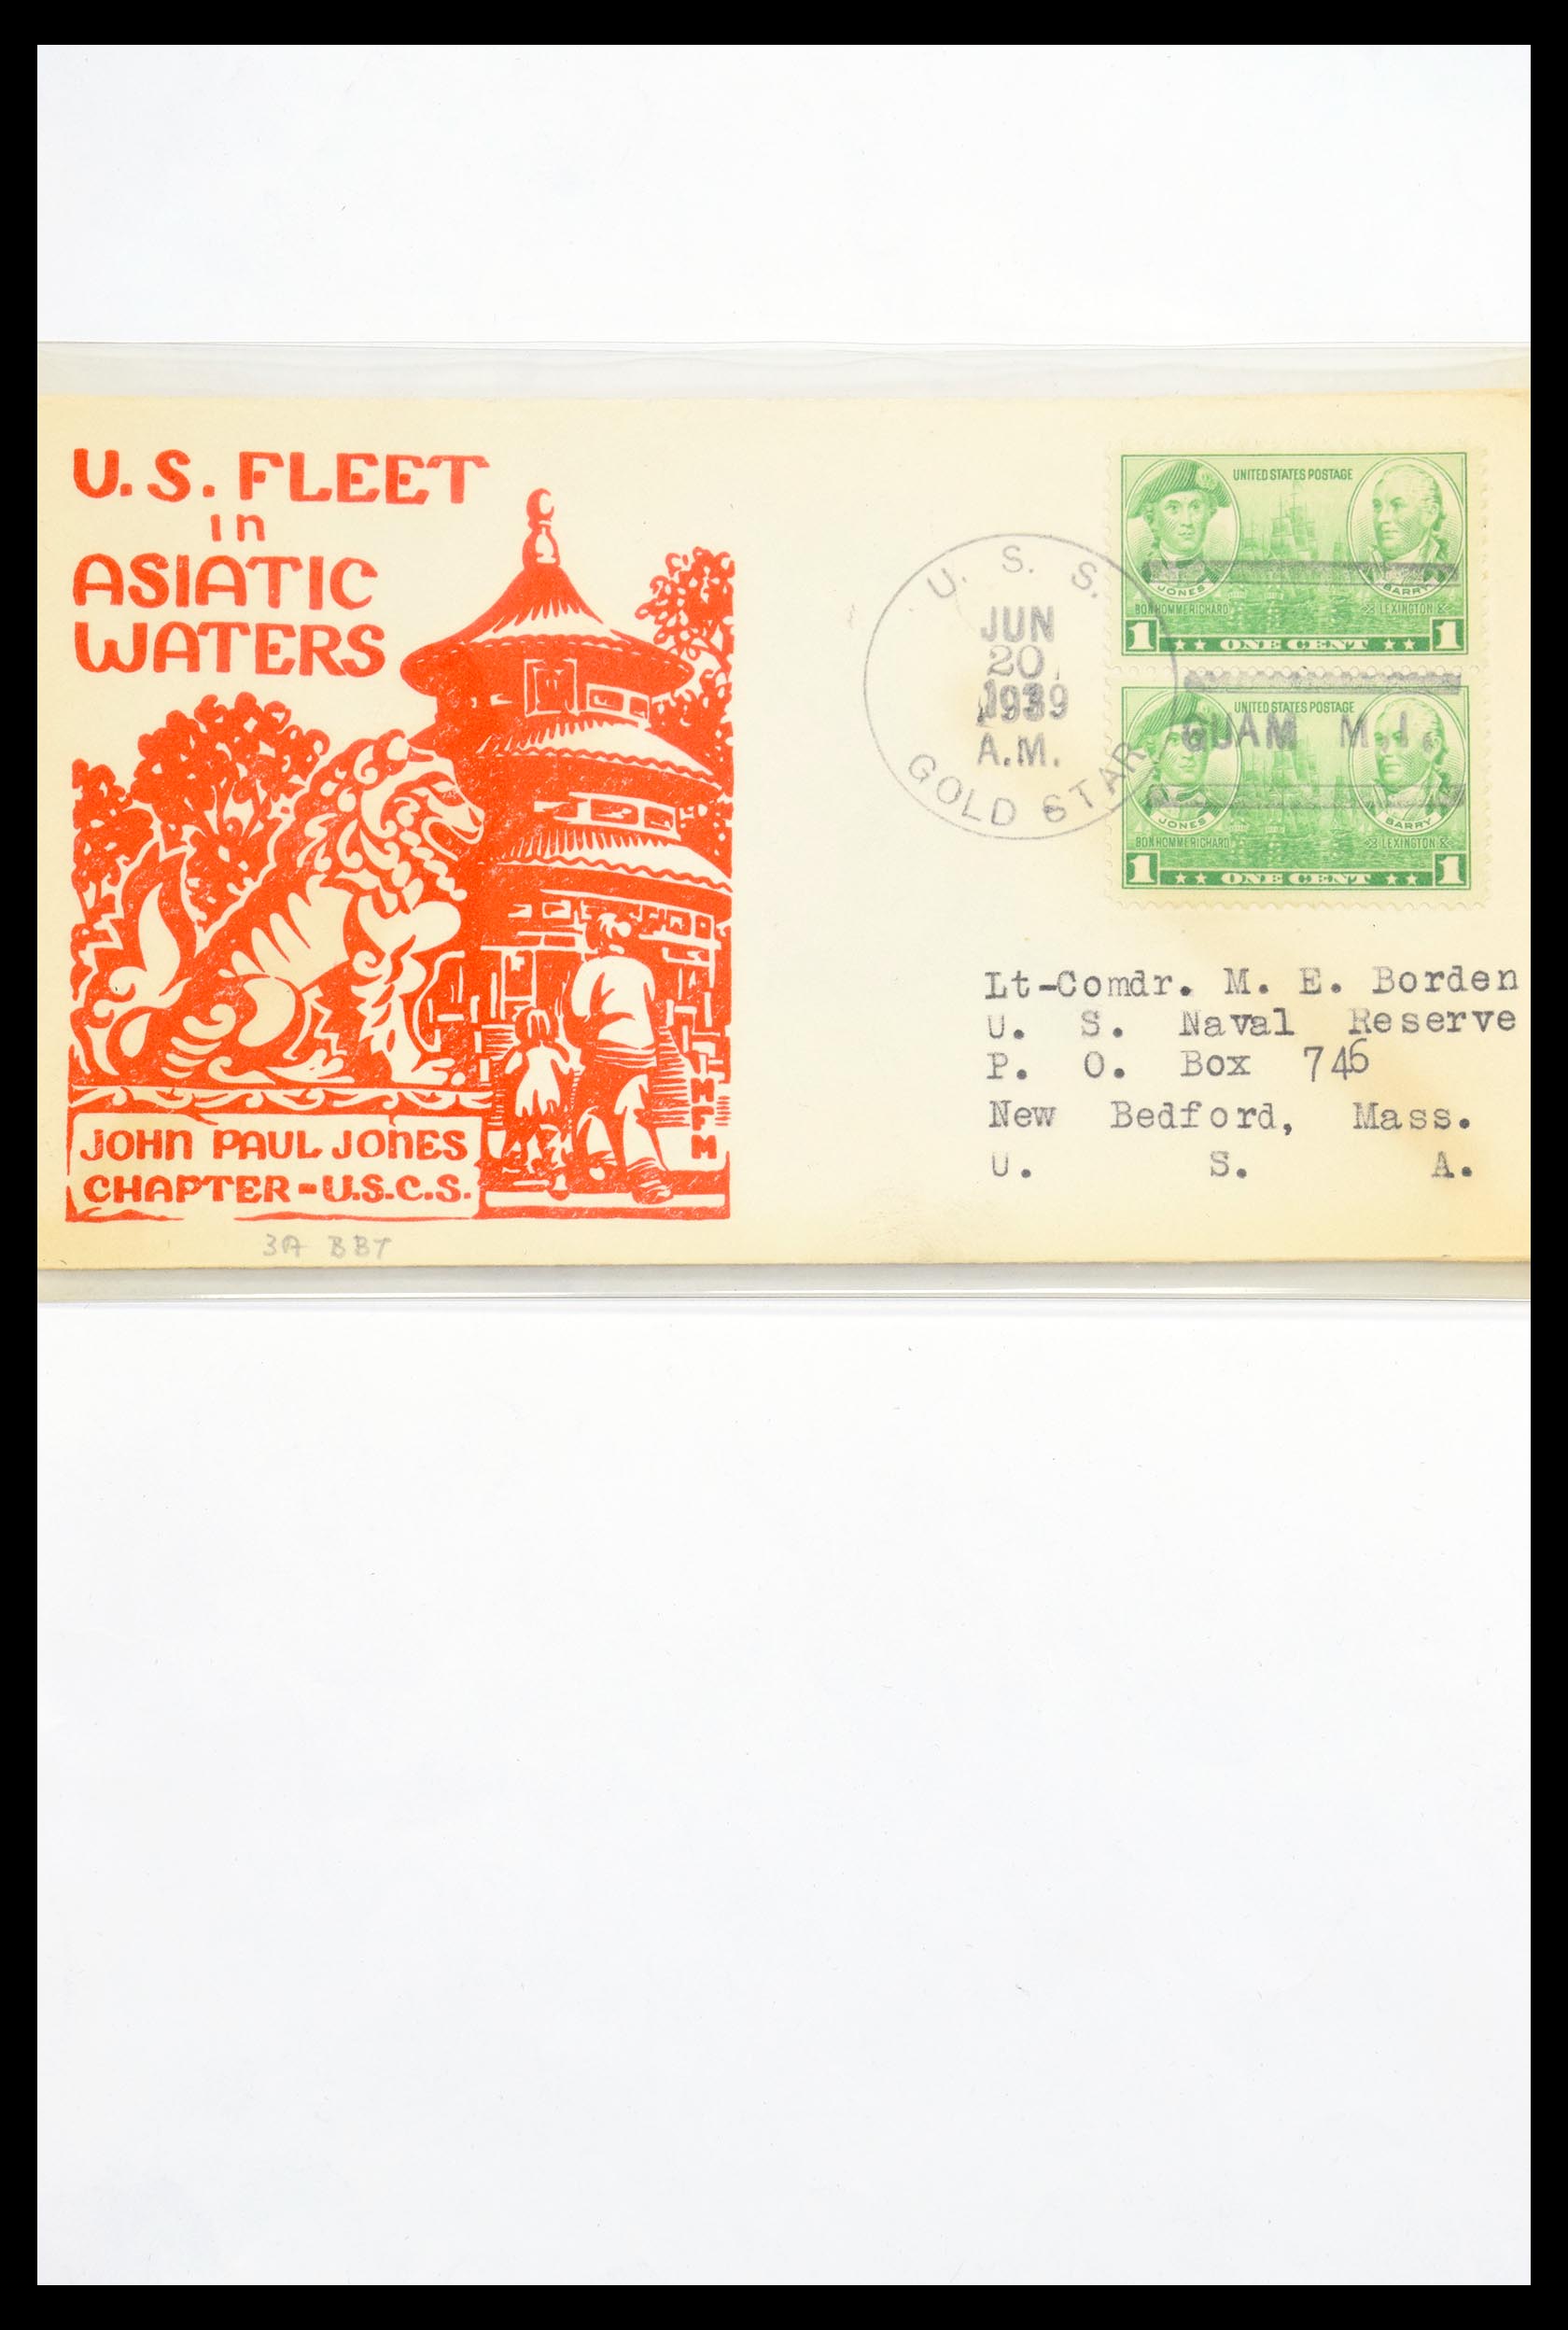 30341 300 - 30341 USA scheepspost brieven 1930-1970.